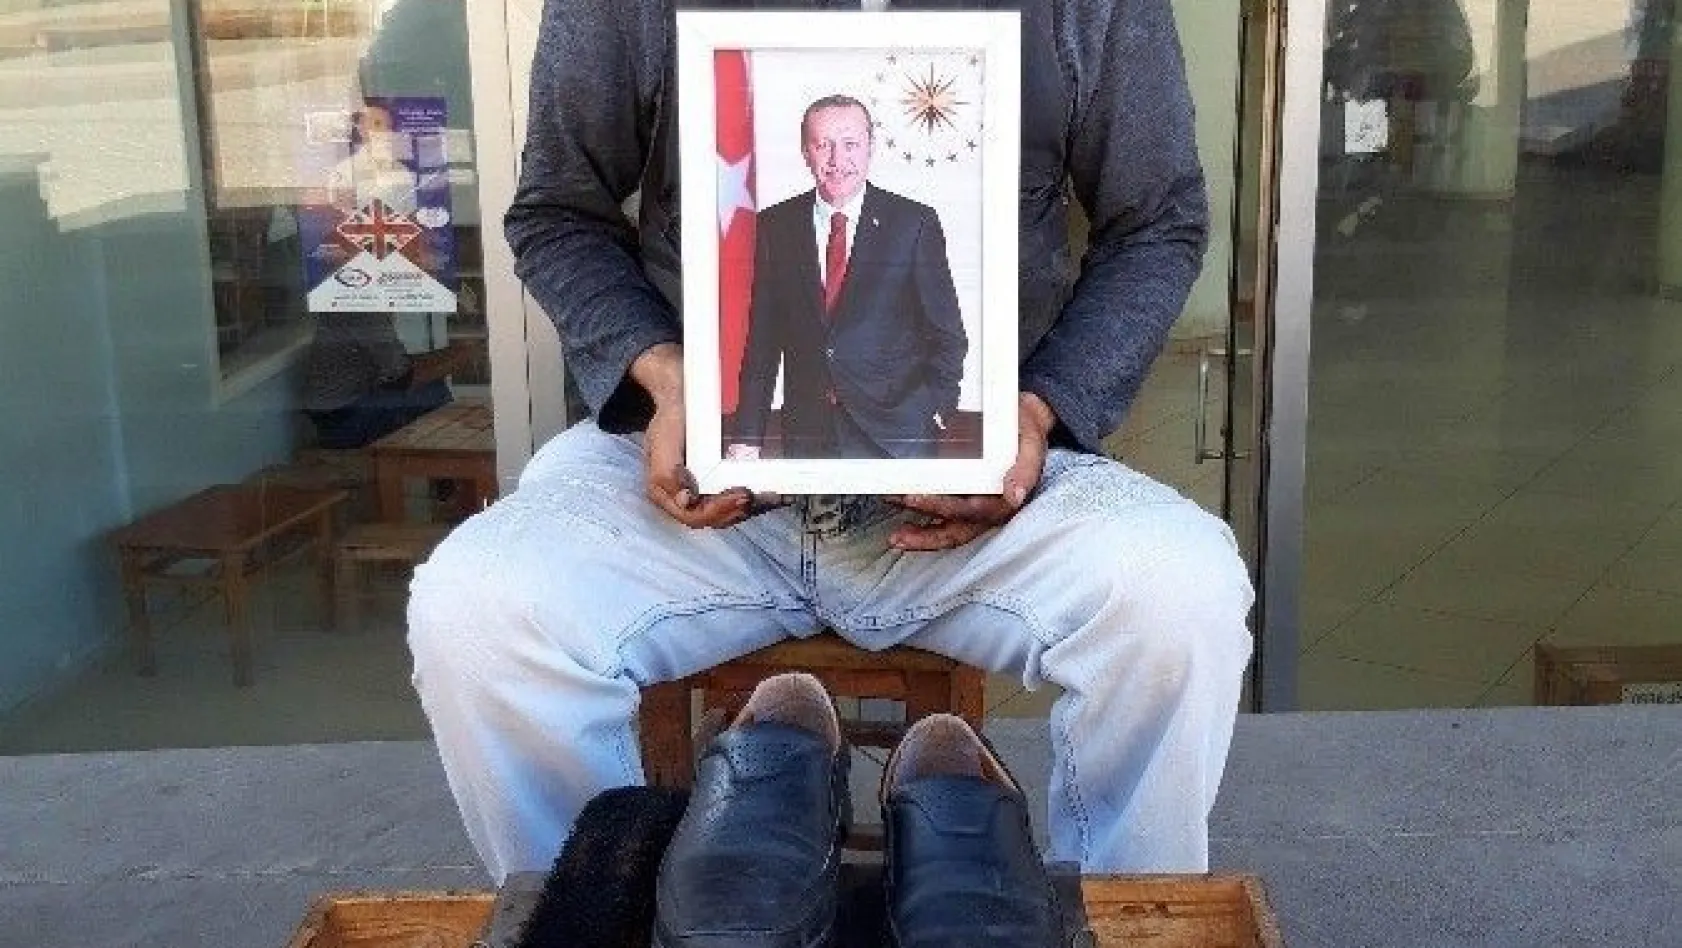 Ayakkabı boyacısı yazar Erdoğan'dan yardım bekliyor
